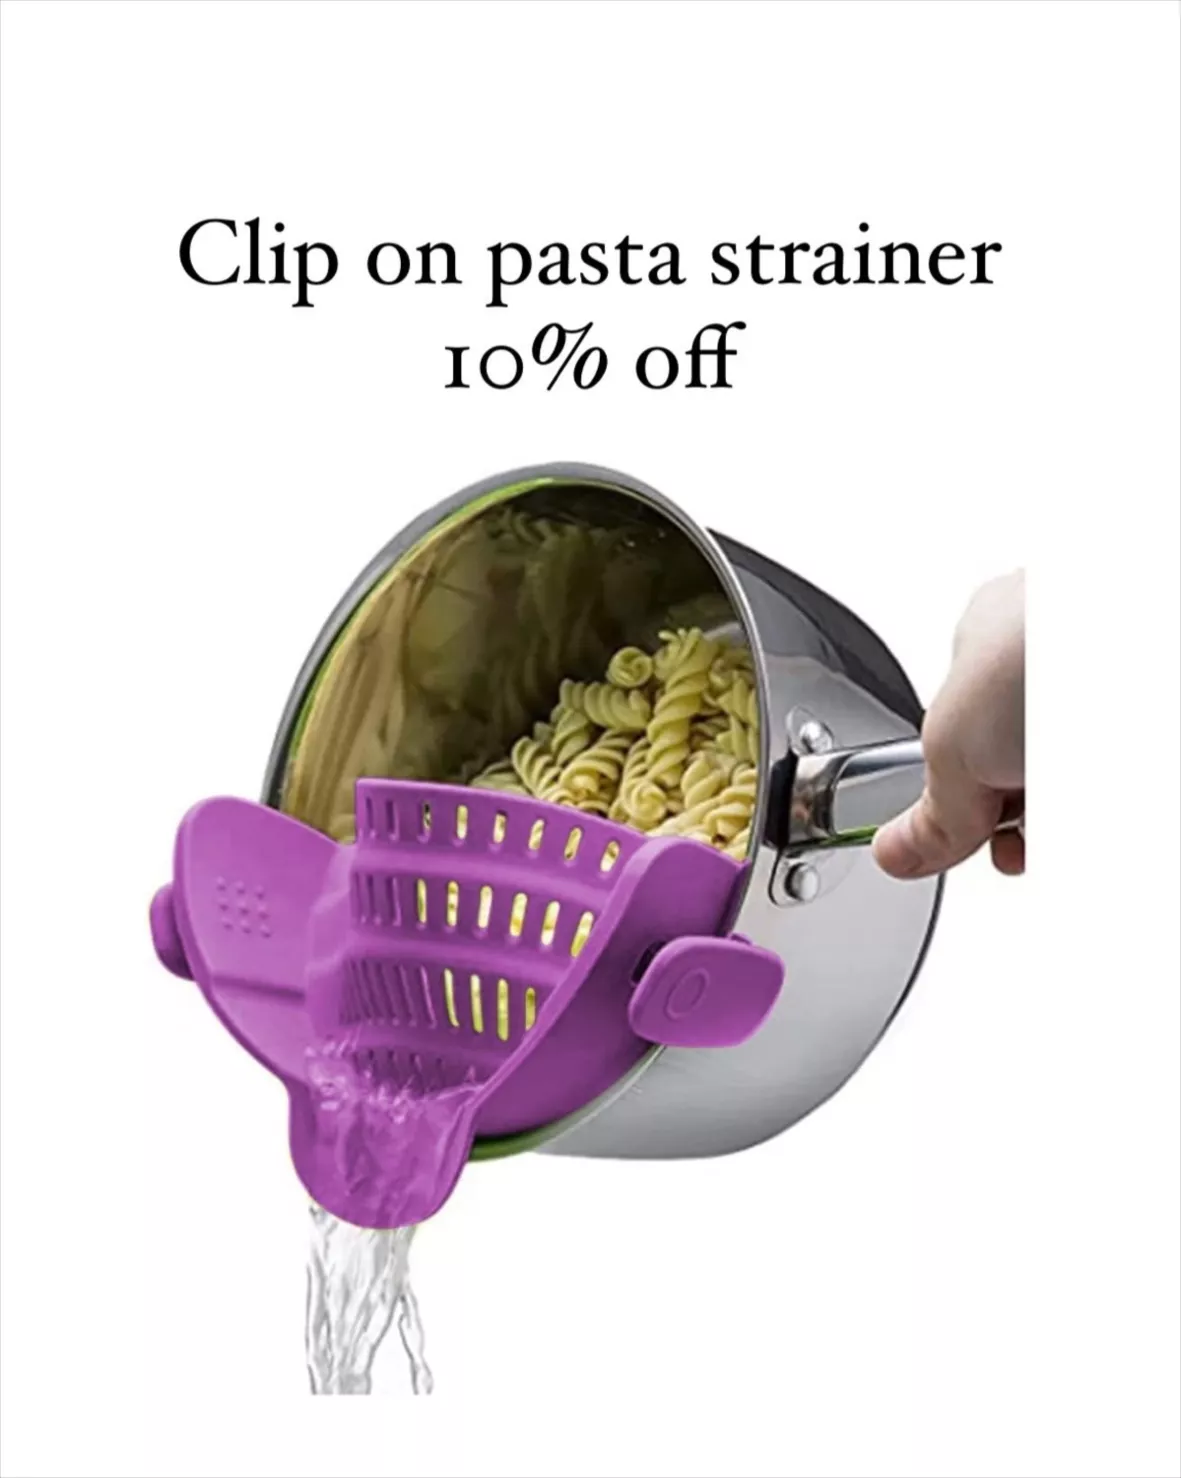 Kitchen Gizmo Snap N Strain Pot Strainer and Pasta Strainer